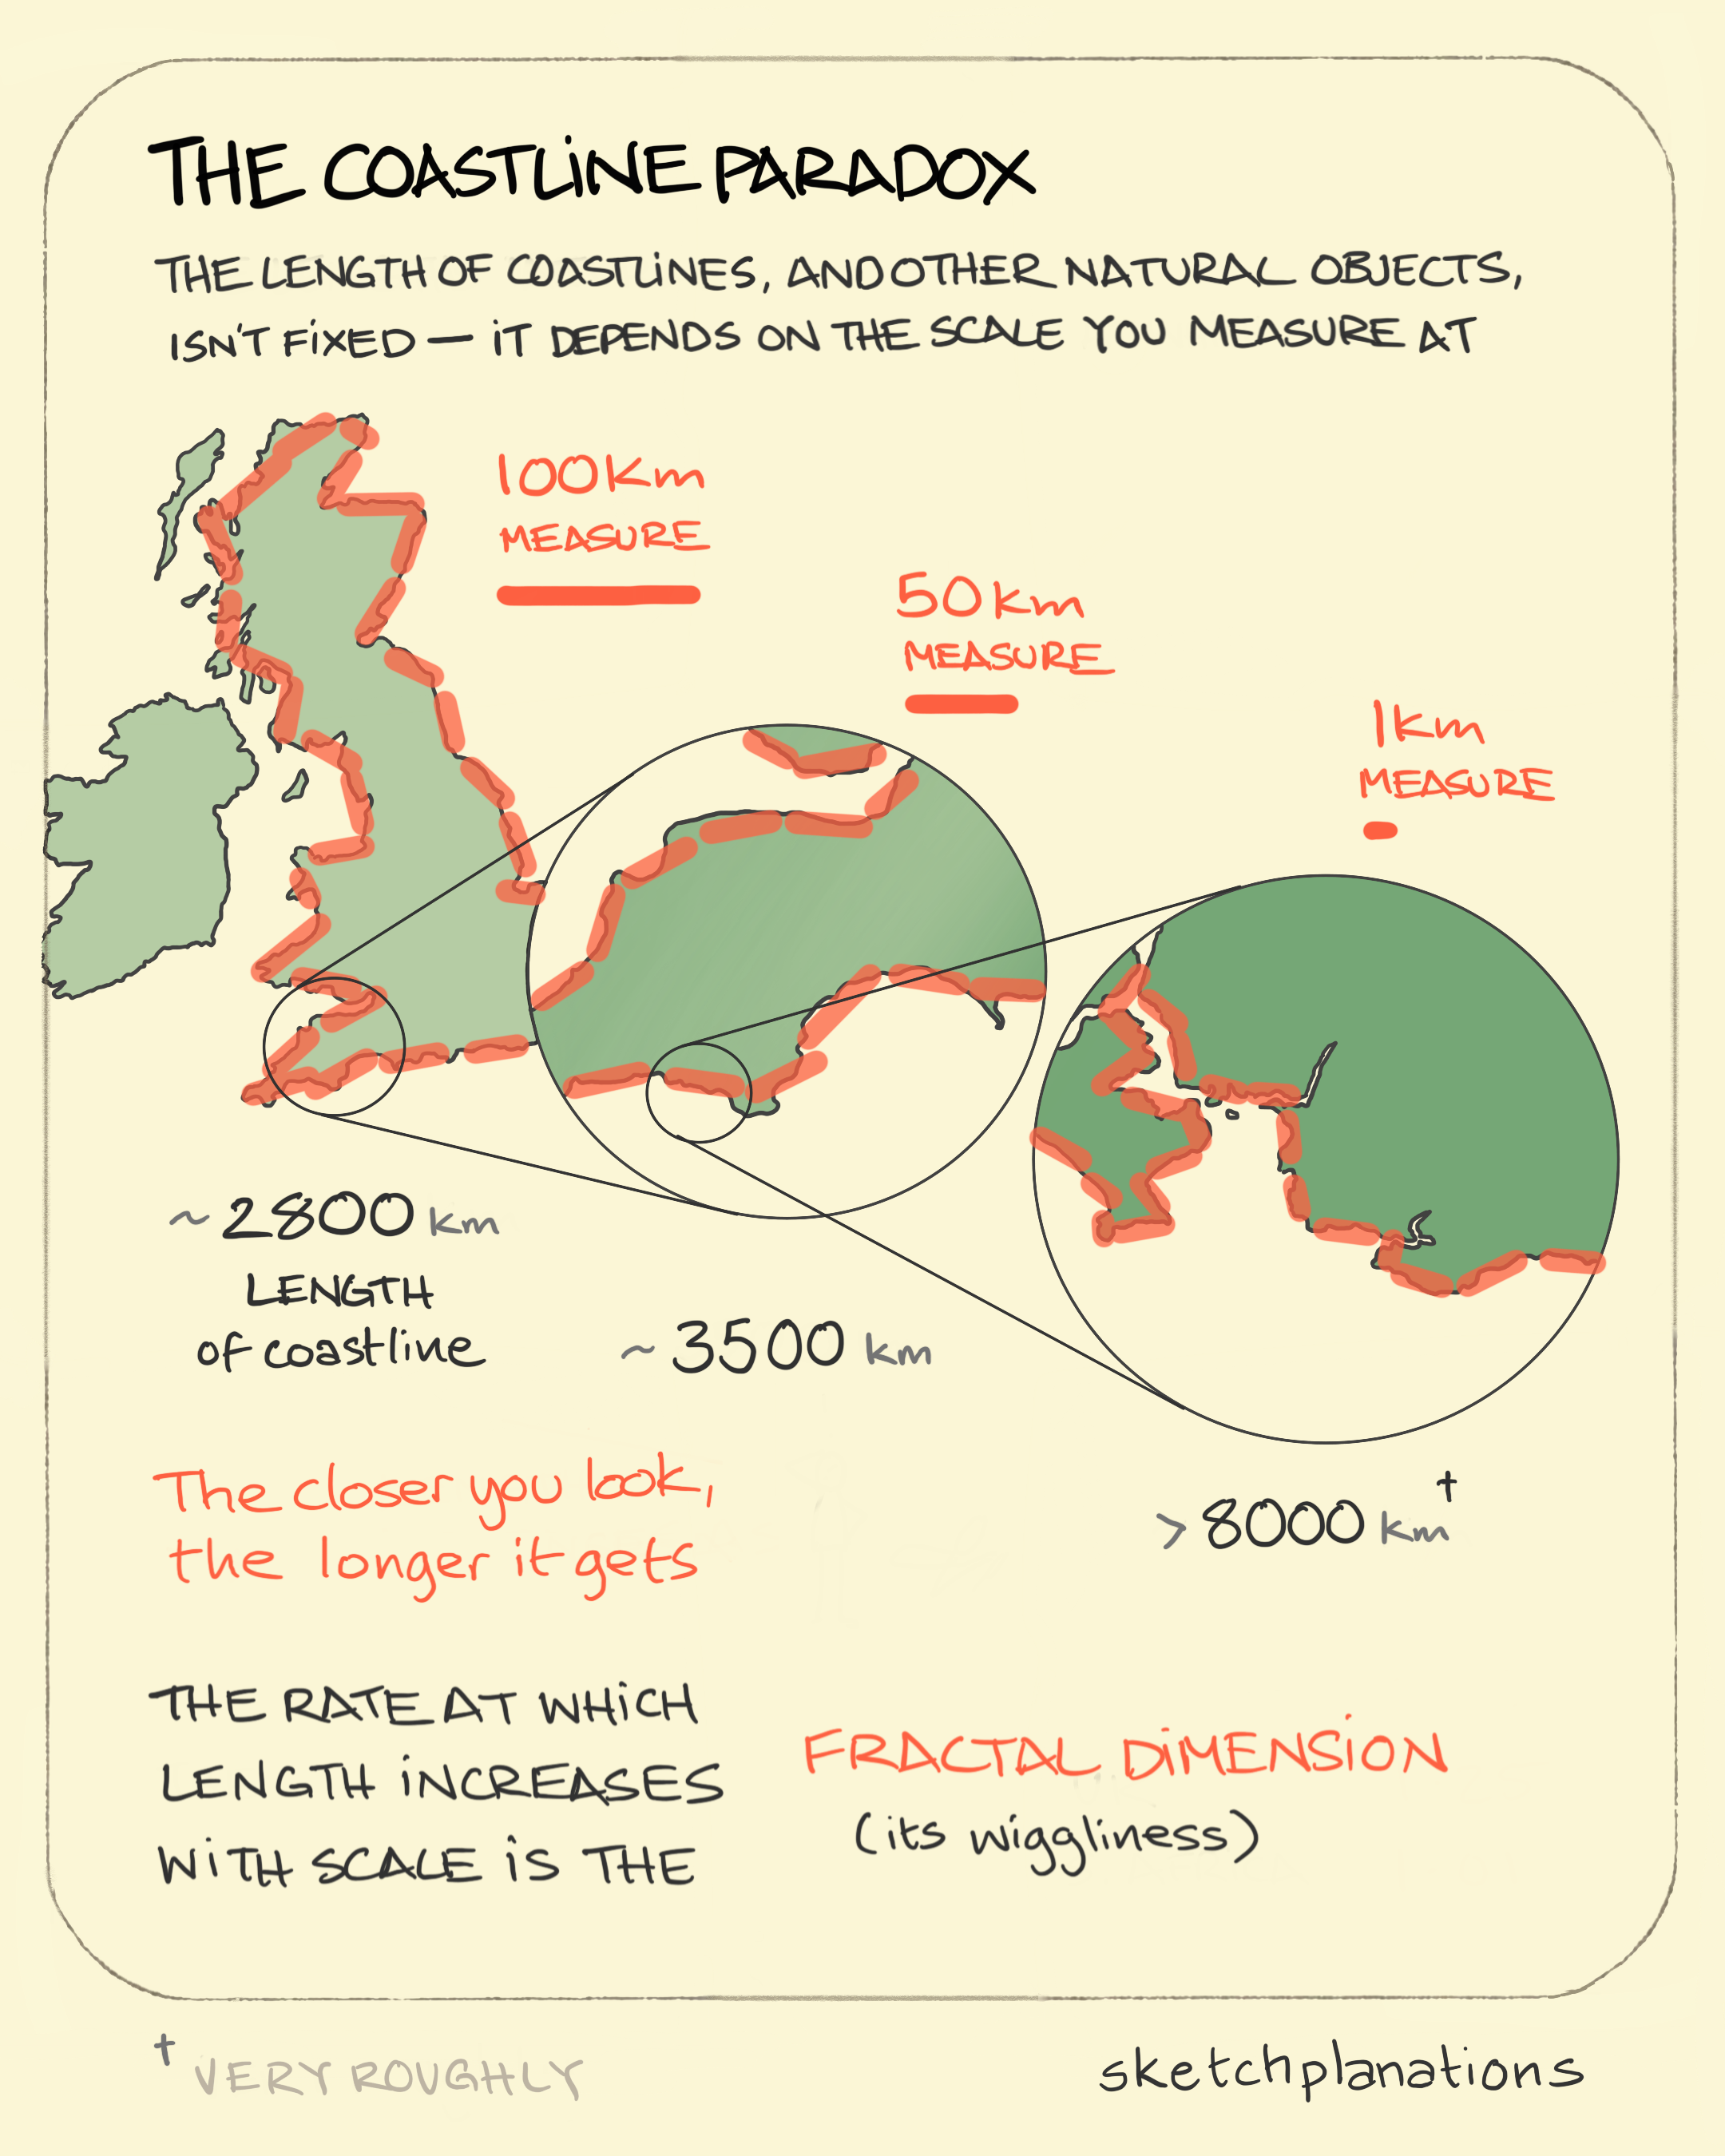 The Coastline Paradox Sketchplanations